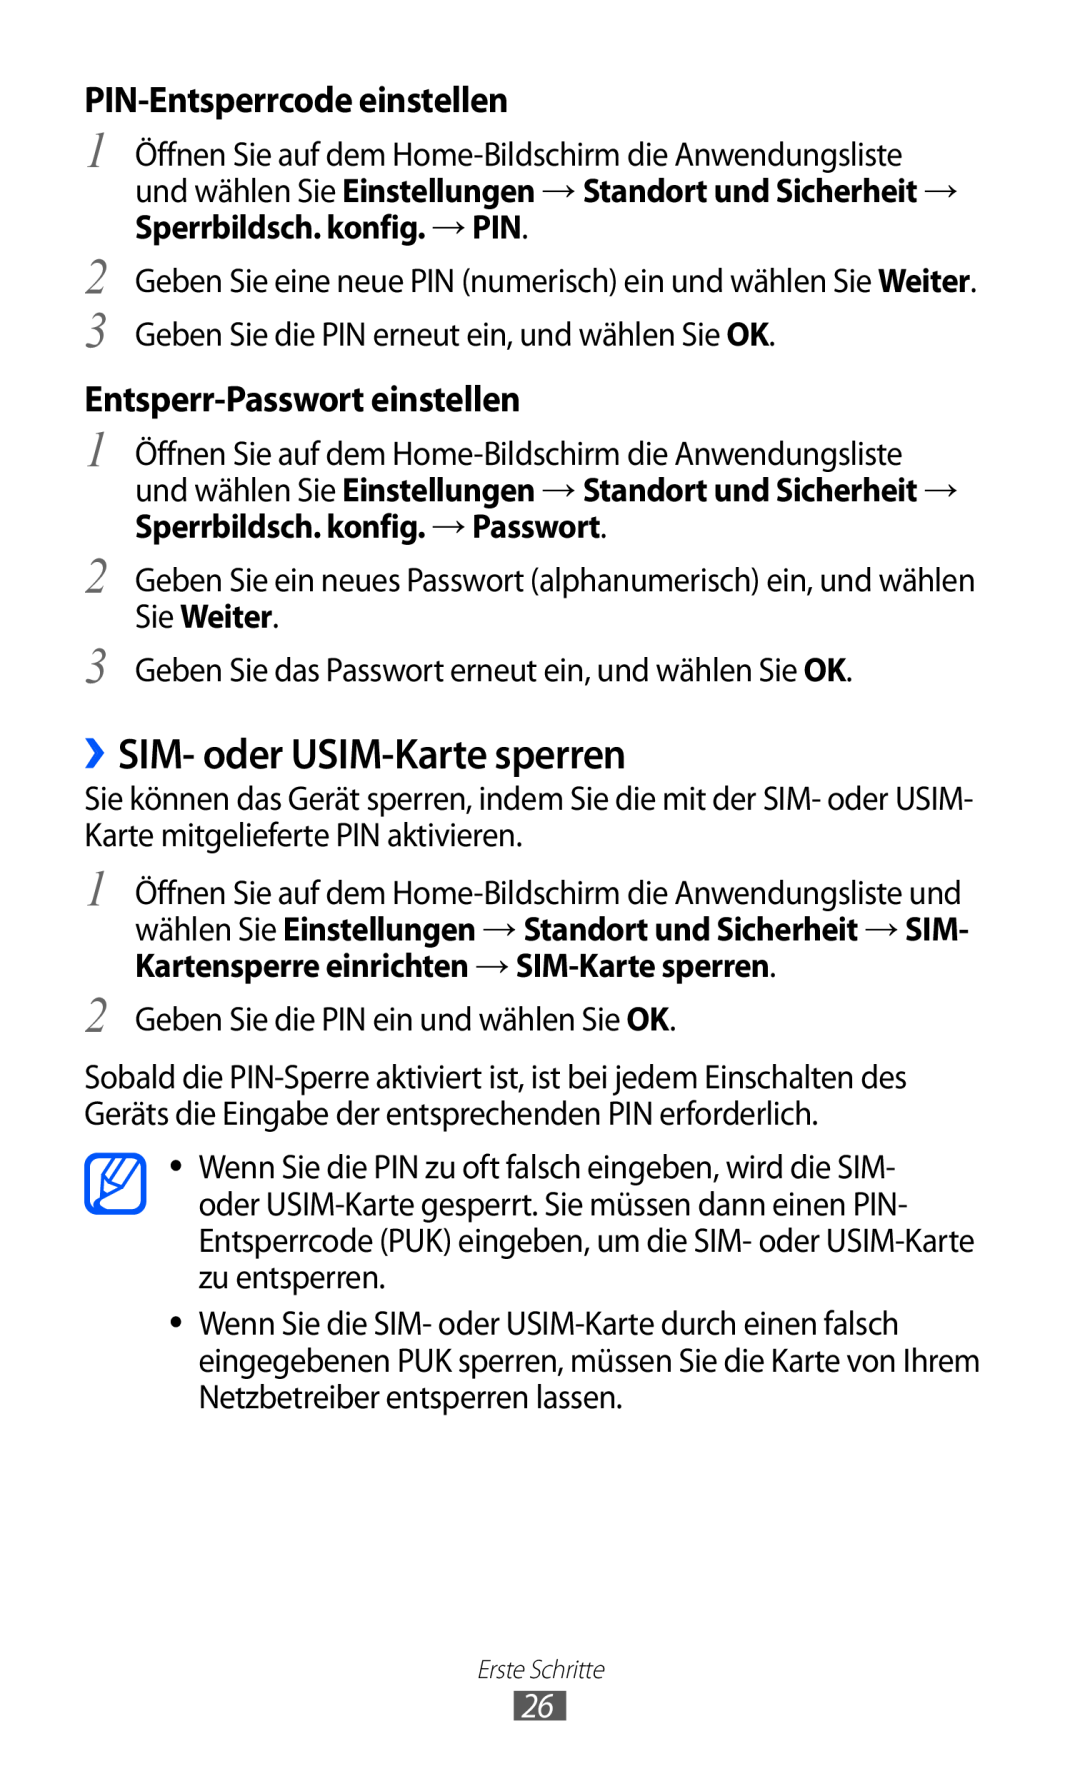 Samsung GT-P7501FKDDTM manual ››SIM- oder USIM-Karte sperren, PIN-Entsperrcode einstellen, Entsperr-Passwort einstellen 